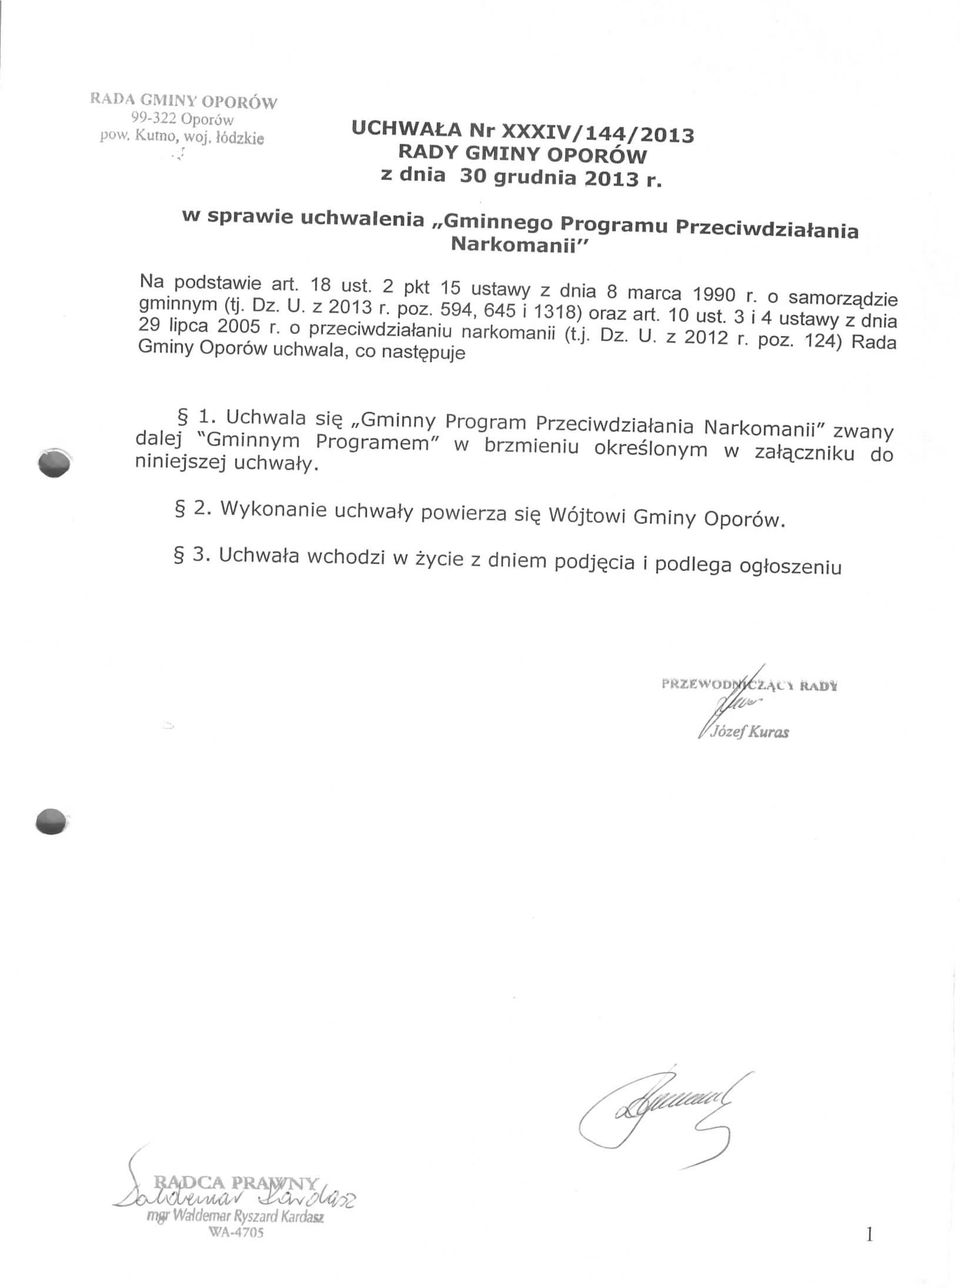 594, 645 i 1318) oraz art. 10 ust. 3 i 4 ustawy z dnia 29 lipca 2005 r. o przeciwdziataniu narkomanii (t.j. Dz. U. z 2012 r. poz. 124) Rada Gminy Oporow uchwala, co nast^puje 1.